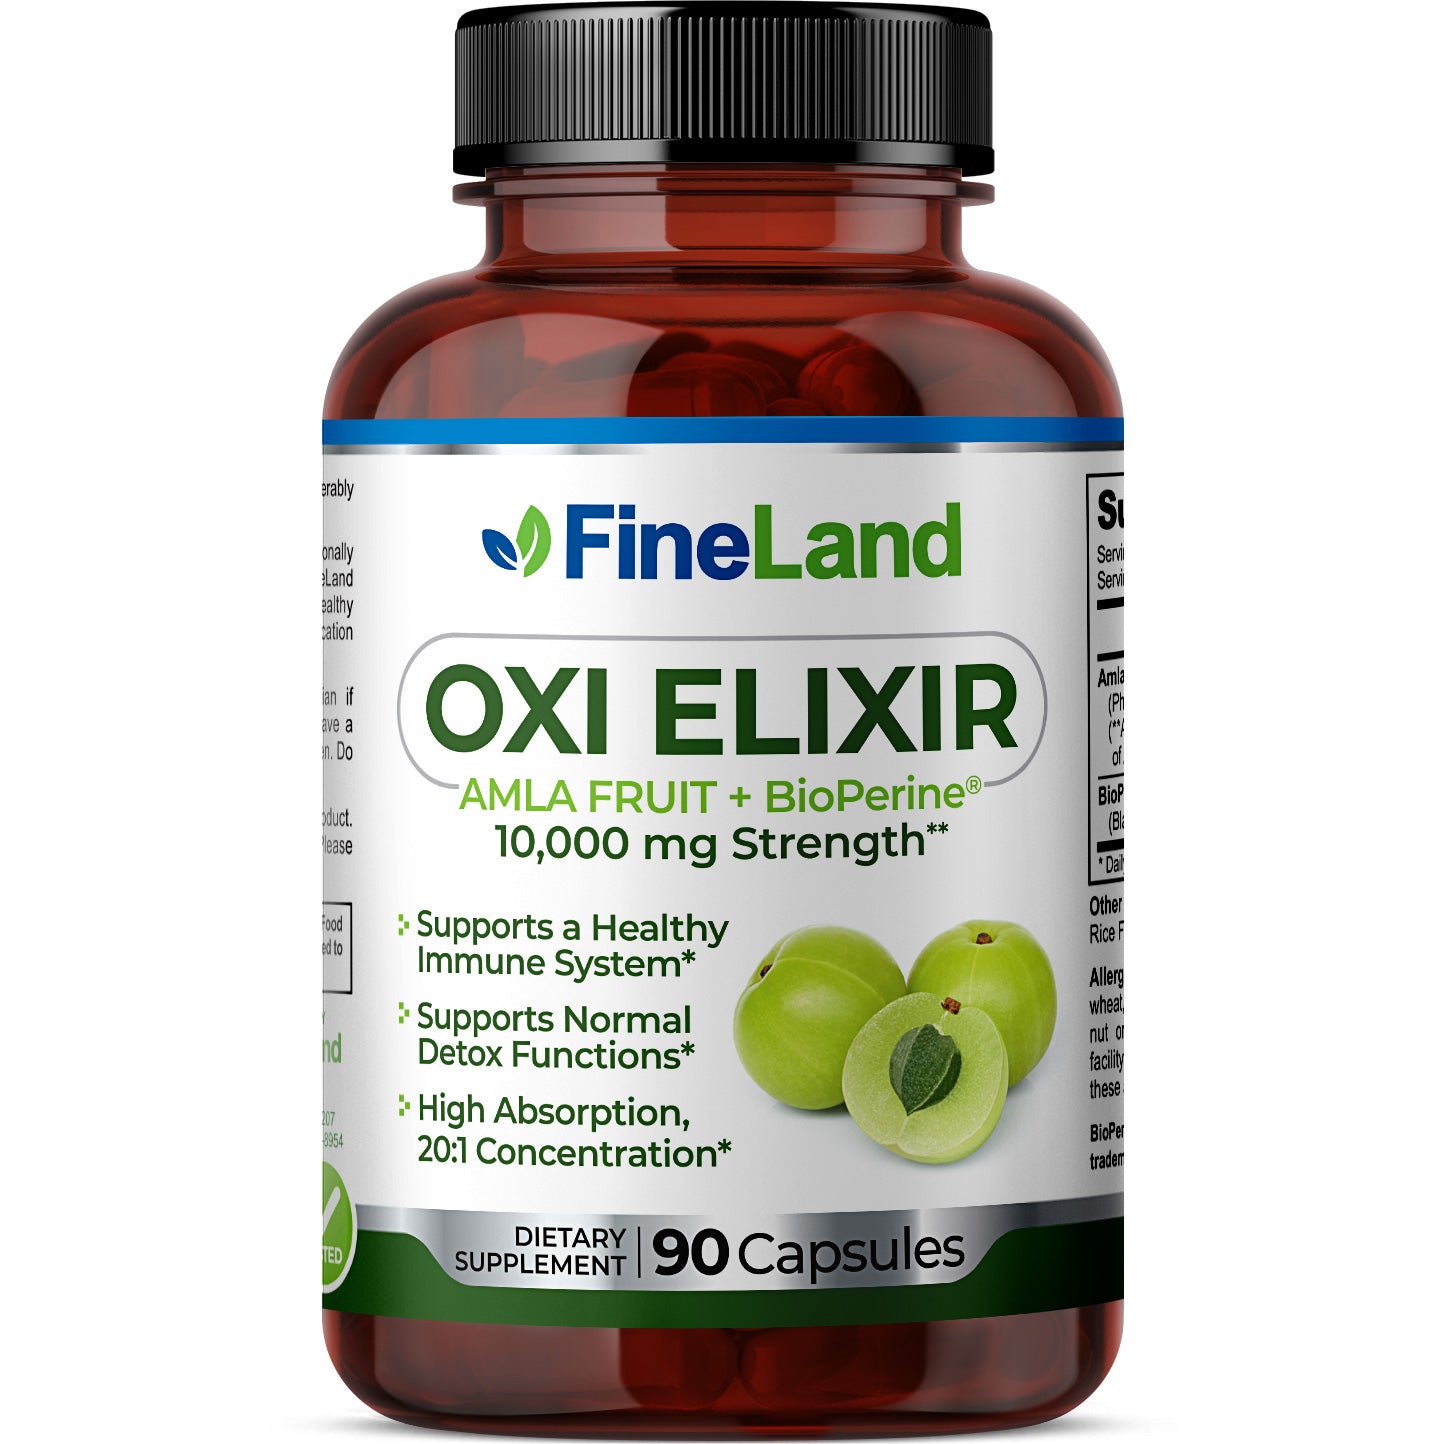 Oxi Elixir